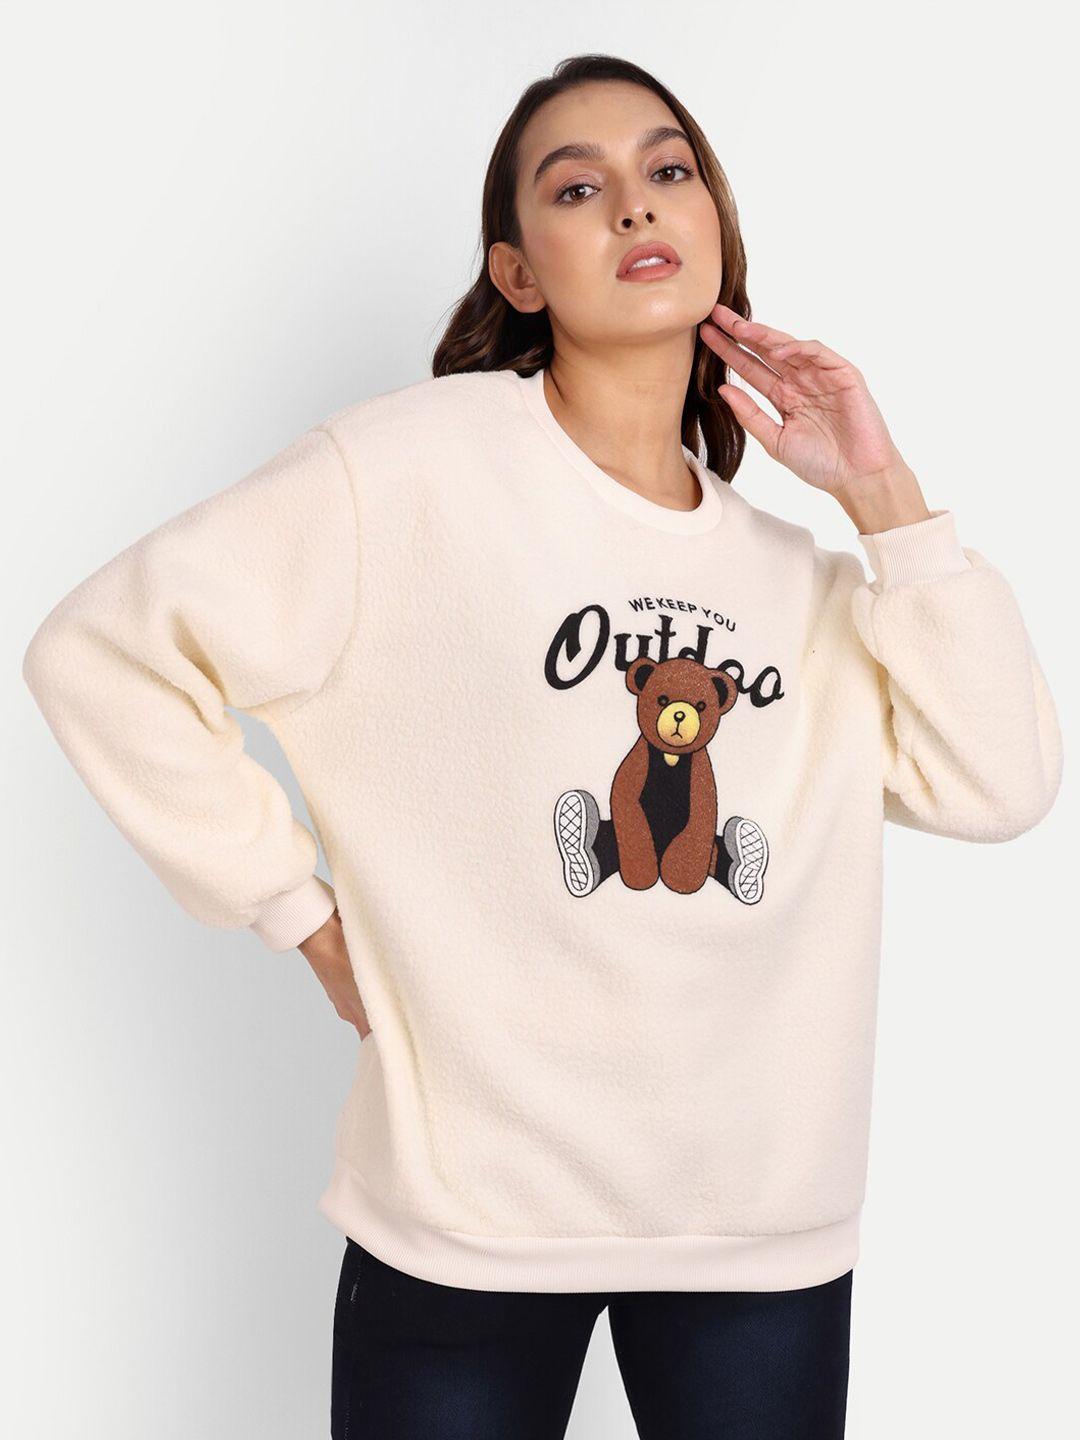 iki-chic-women-printed-round-neck-sweatshirt